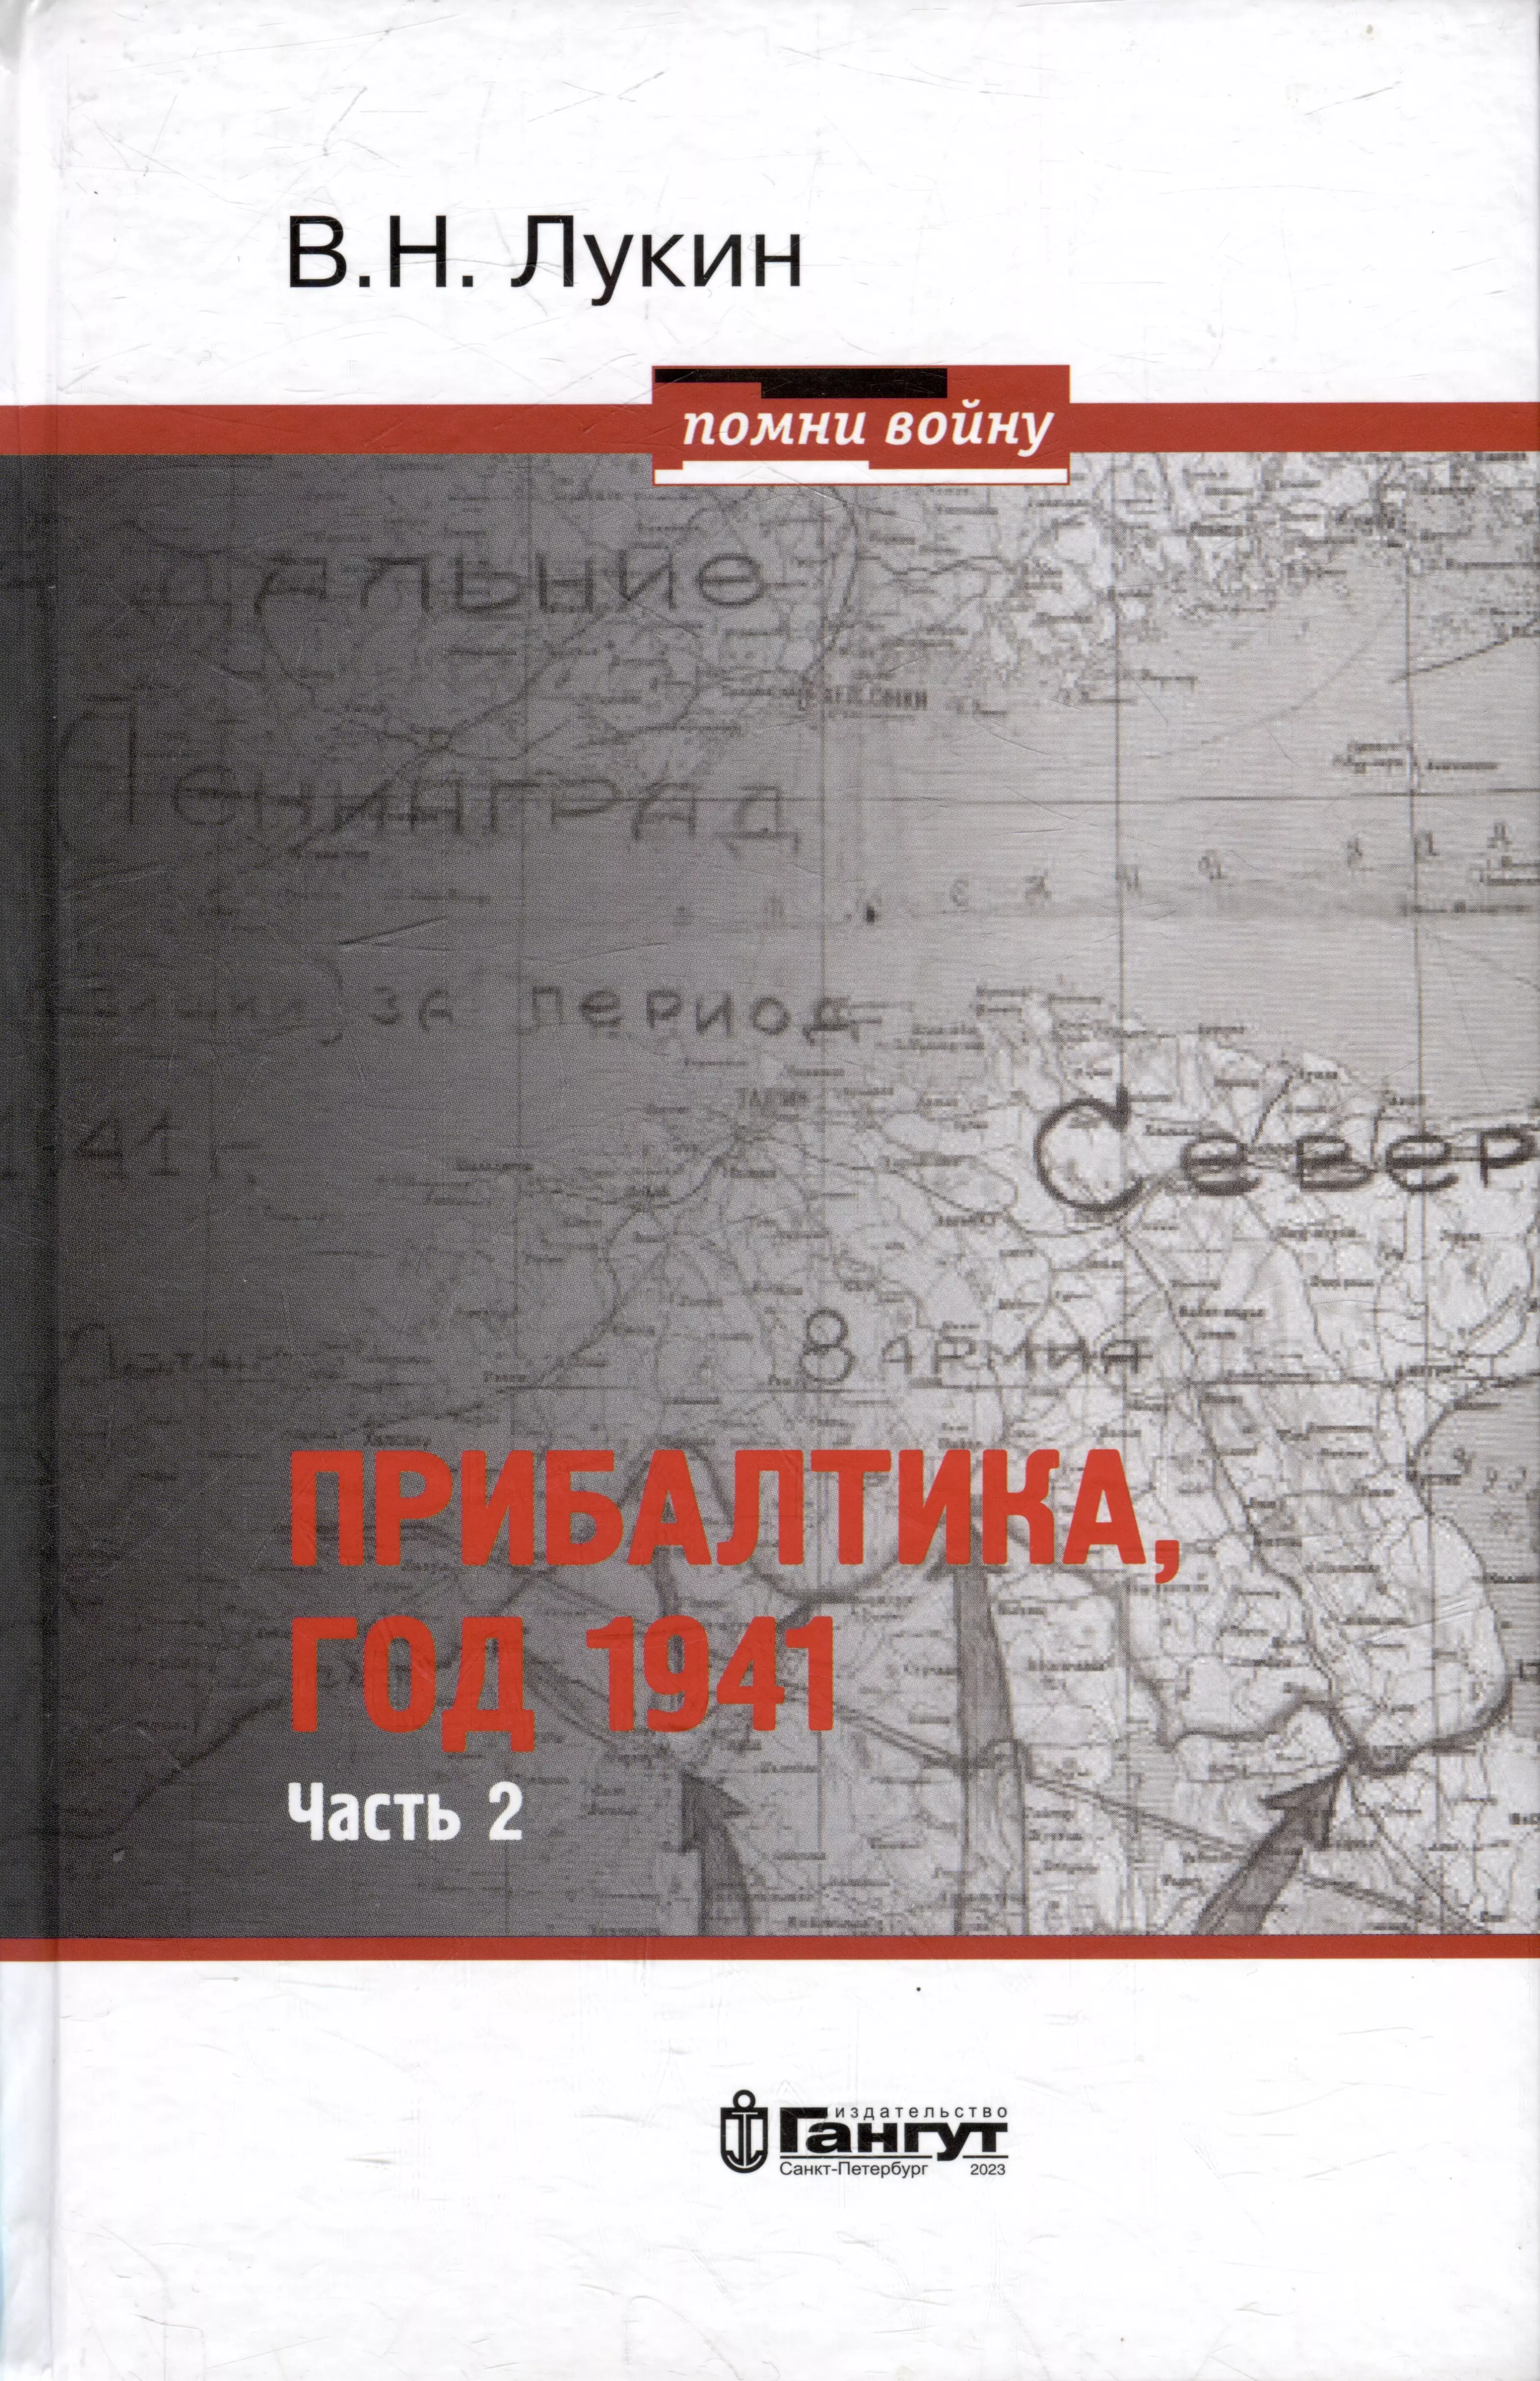 Прибалтика, год 1941. Часть 2. «БоБр»а сражается. 1941-1945